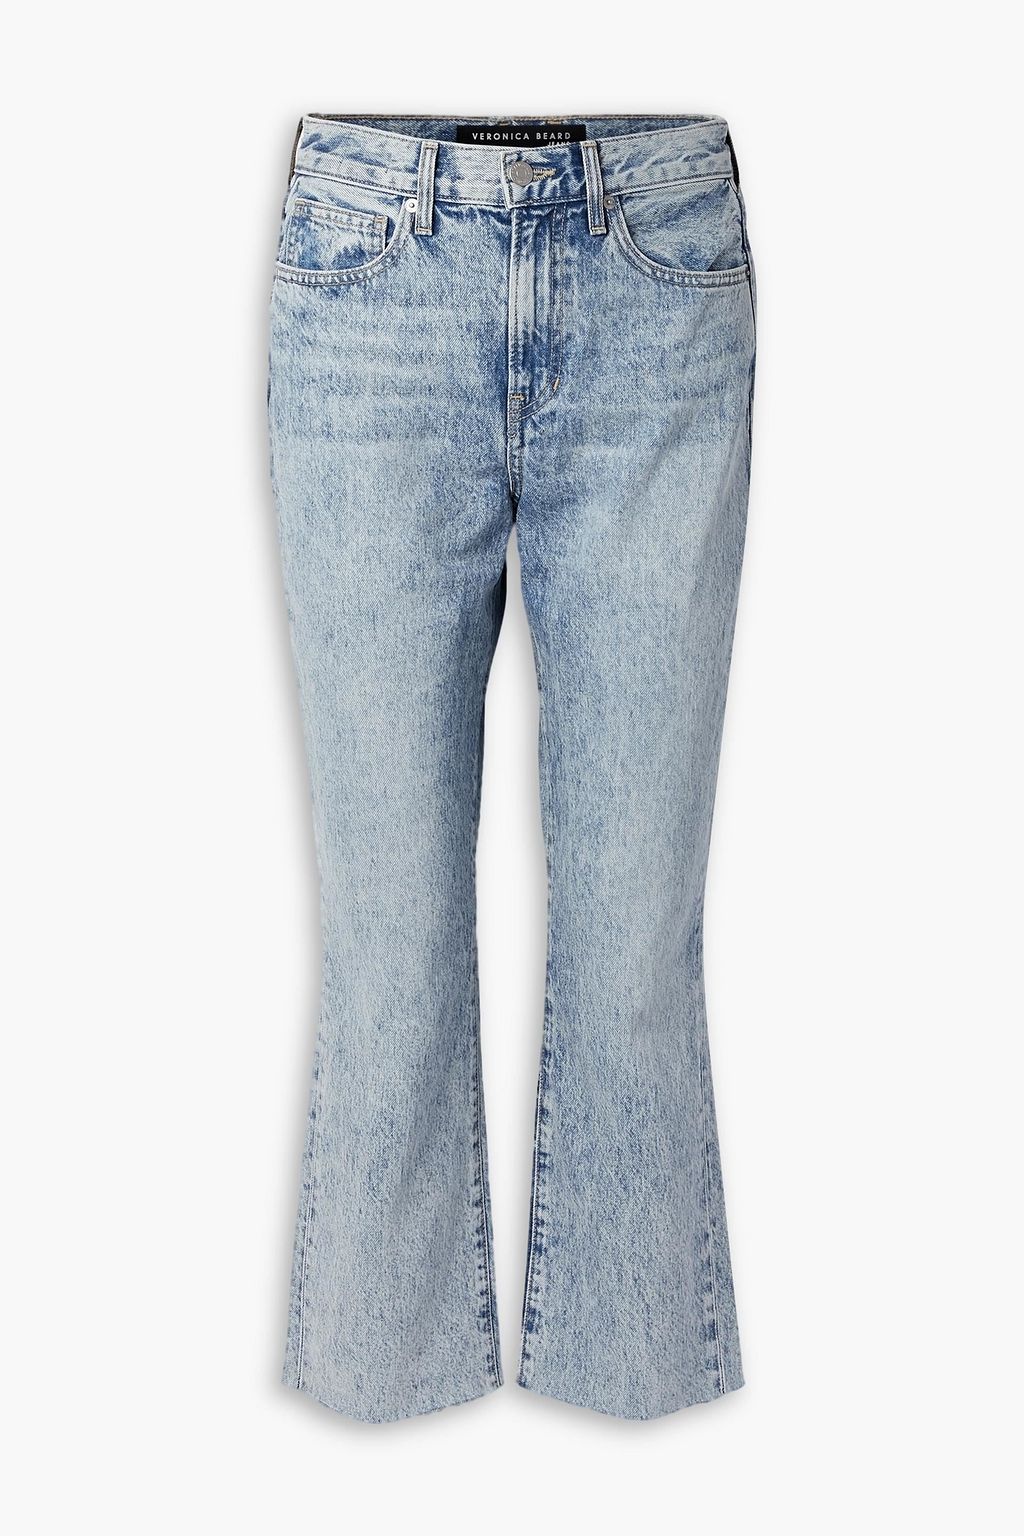 Укороченные расклешенные джинсы Carly с высокой посадкой VERONICA BEARD, синий расклешенные джинсы carly со средней посадкой veronica beard цвет sierra blue